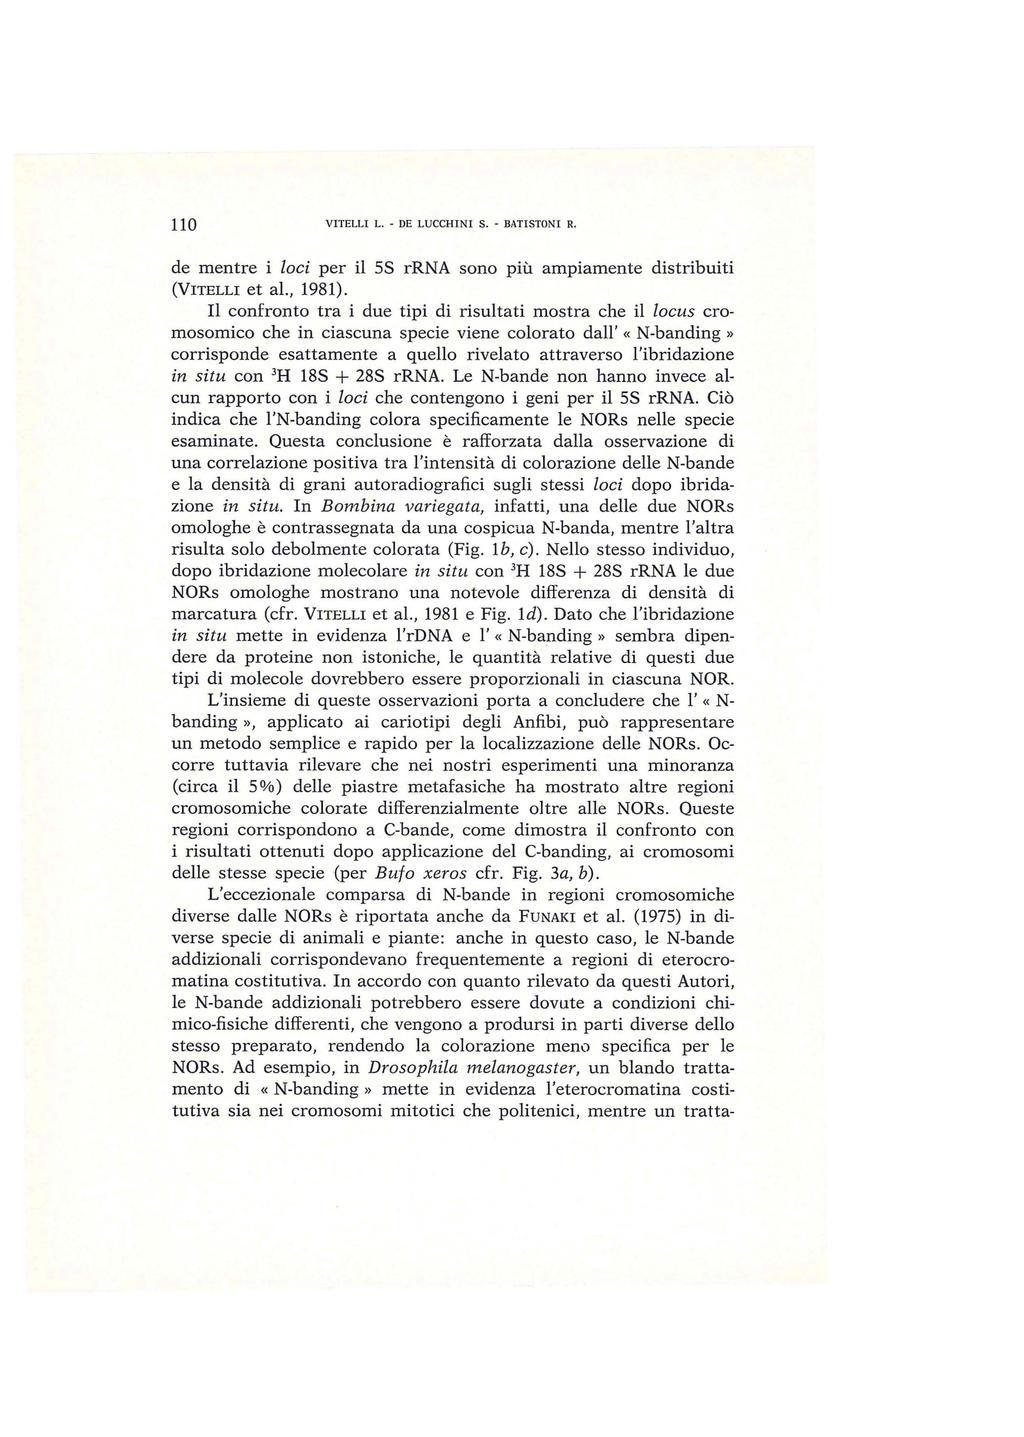 110 VITELLI L. - DE LUCCHINI S. - BATISTON I R. de mentre i laci per il 5S rrna sono più ampiamente distribuiti (VITELLI et al., 1981).